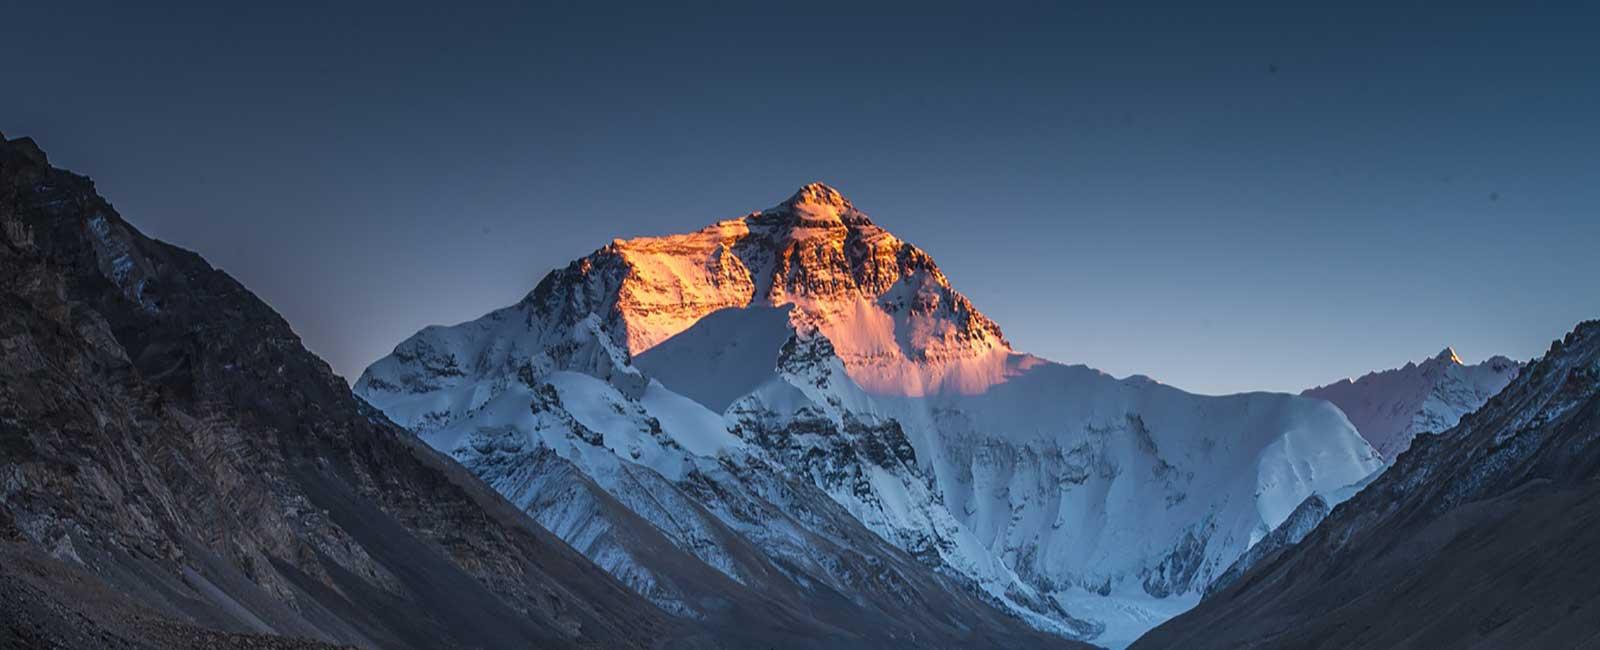 Tibet Everest Base Camp Tour - 14 Days